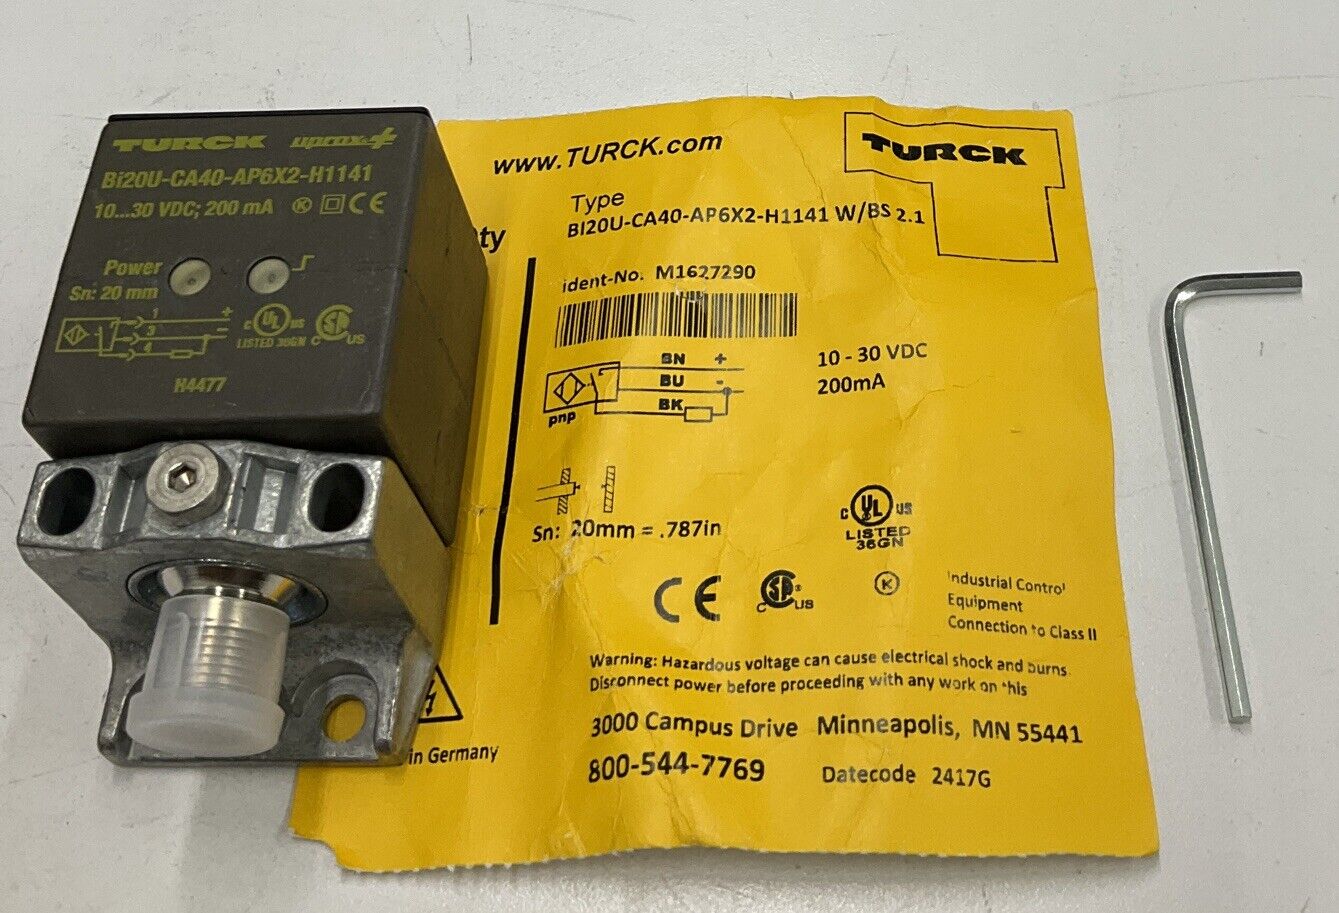 Turck Bi2OU-CA40-AP6X2-H1141 W/BS 2.1 M1627290 Sensor SN 20MM (BL112) - 0